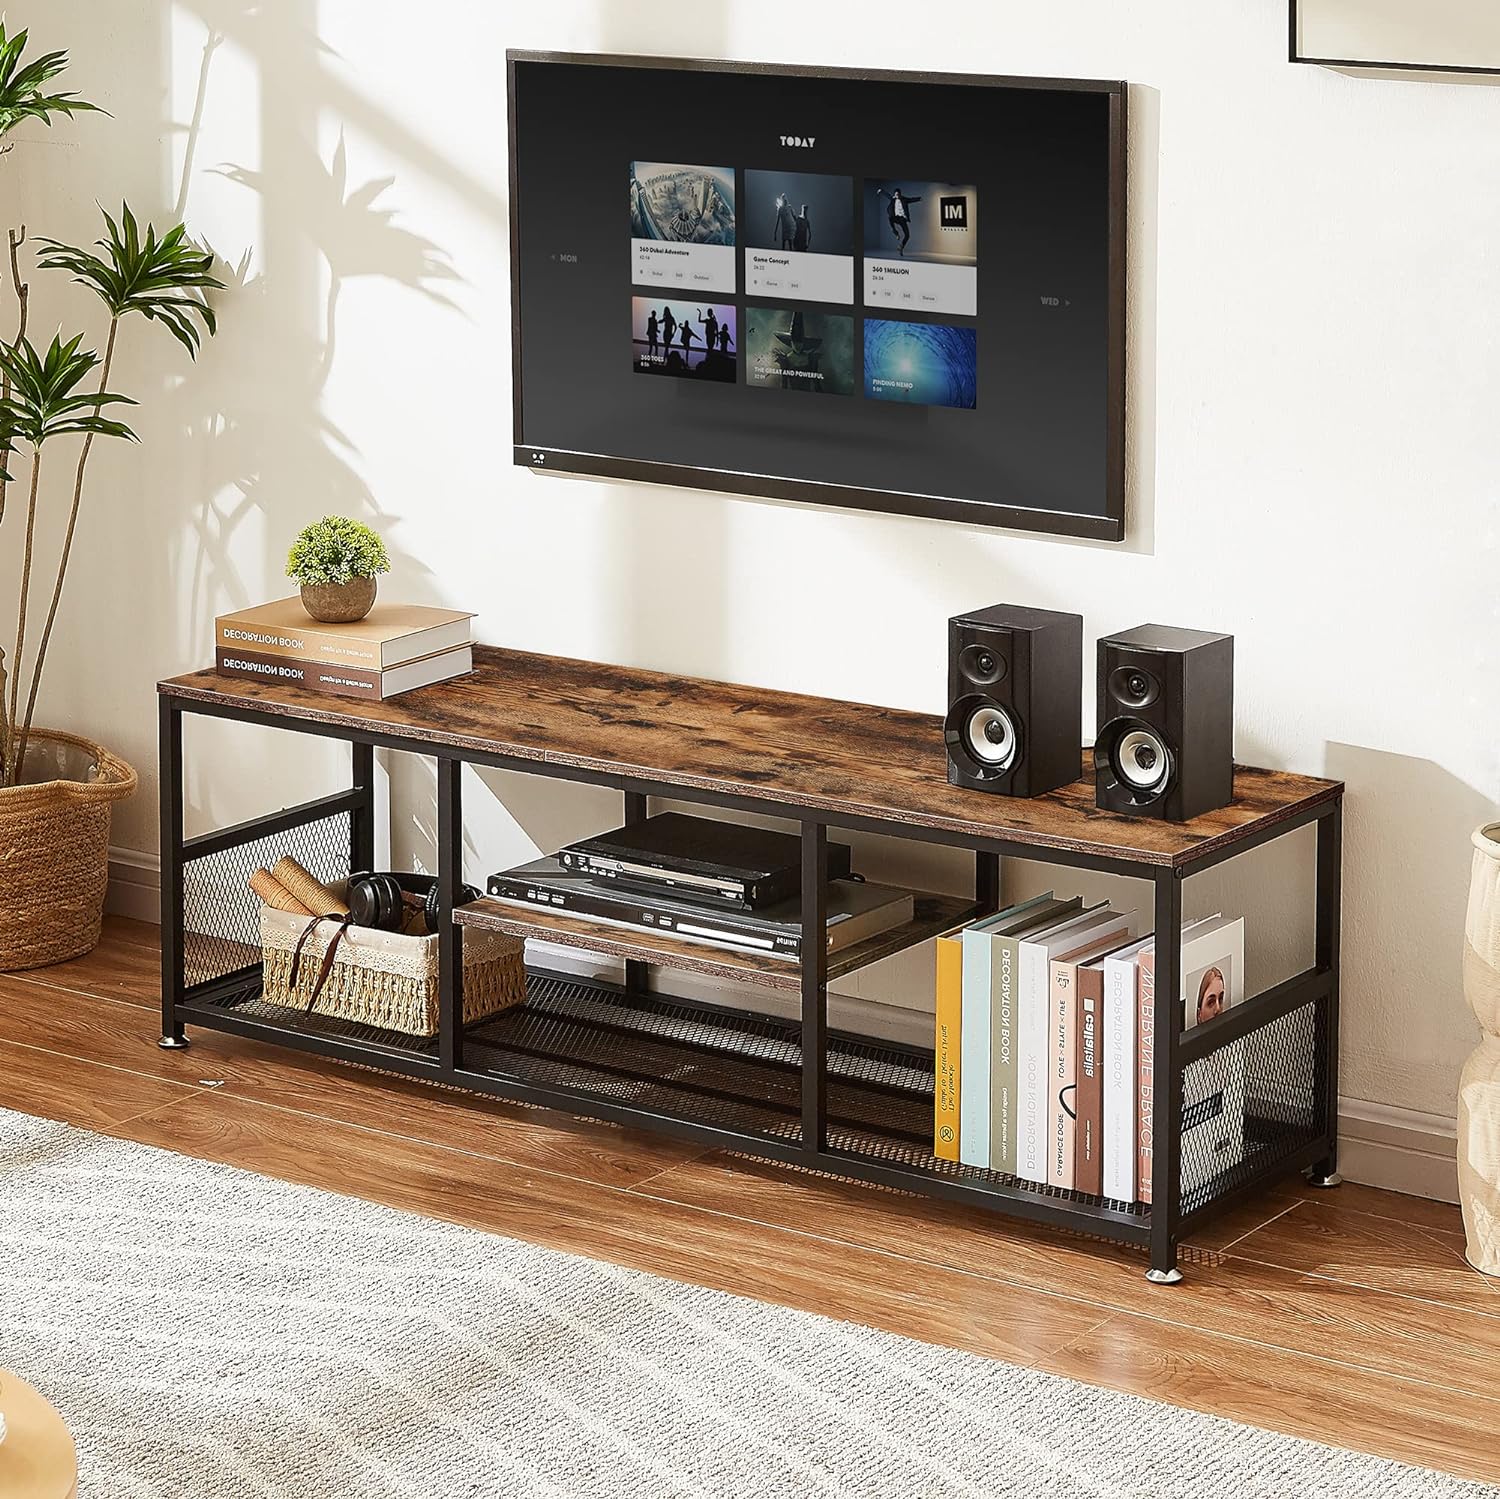 Compre un Soporte tv pie: amplia colección de soporte pie TV - Vebos